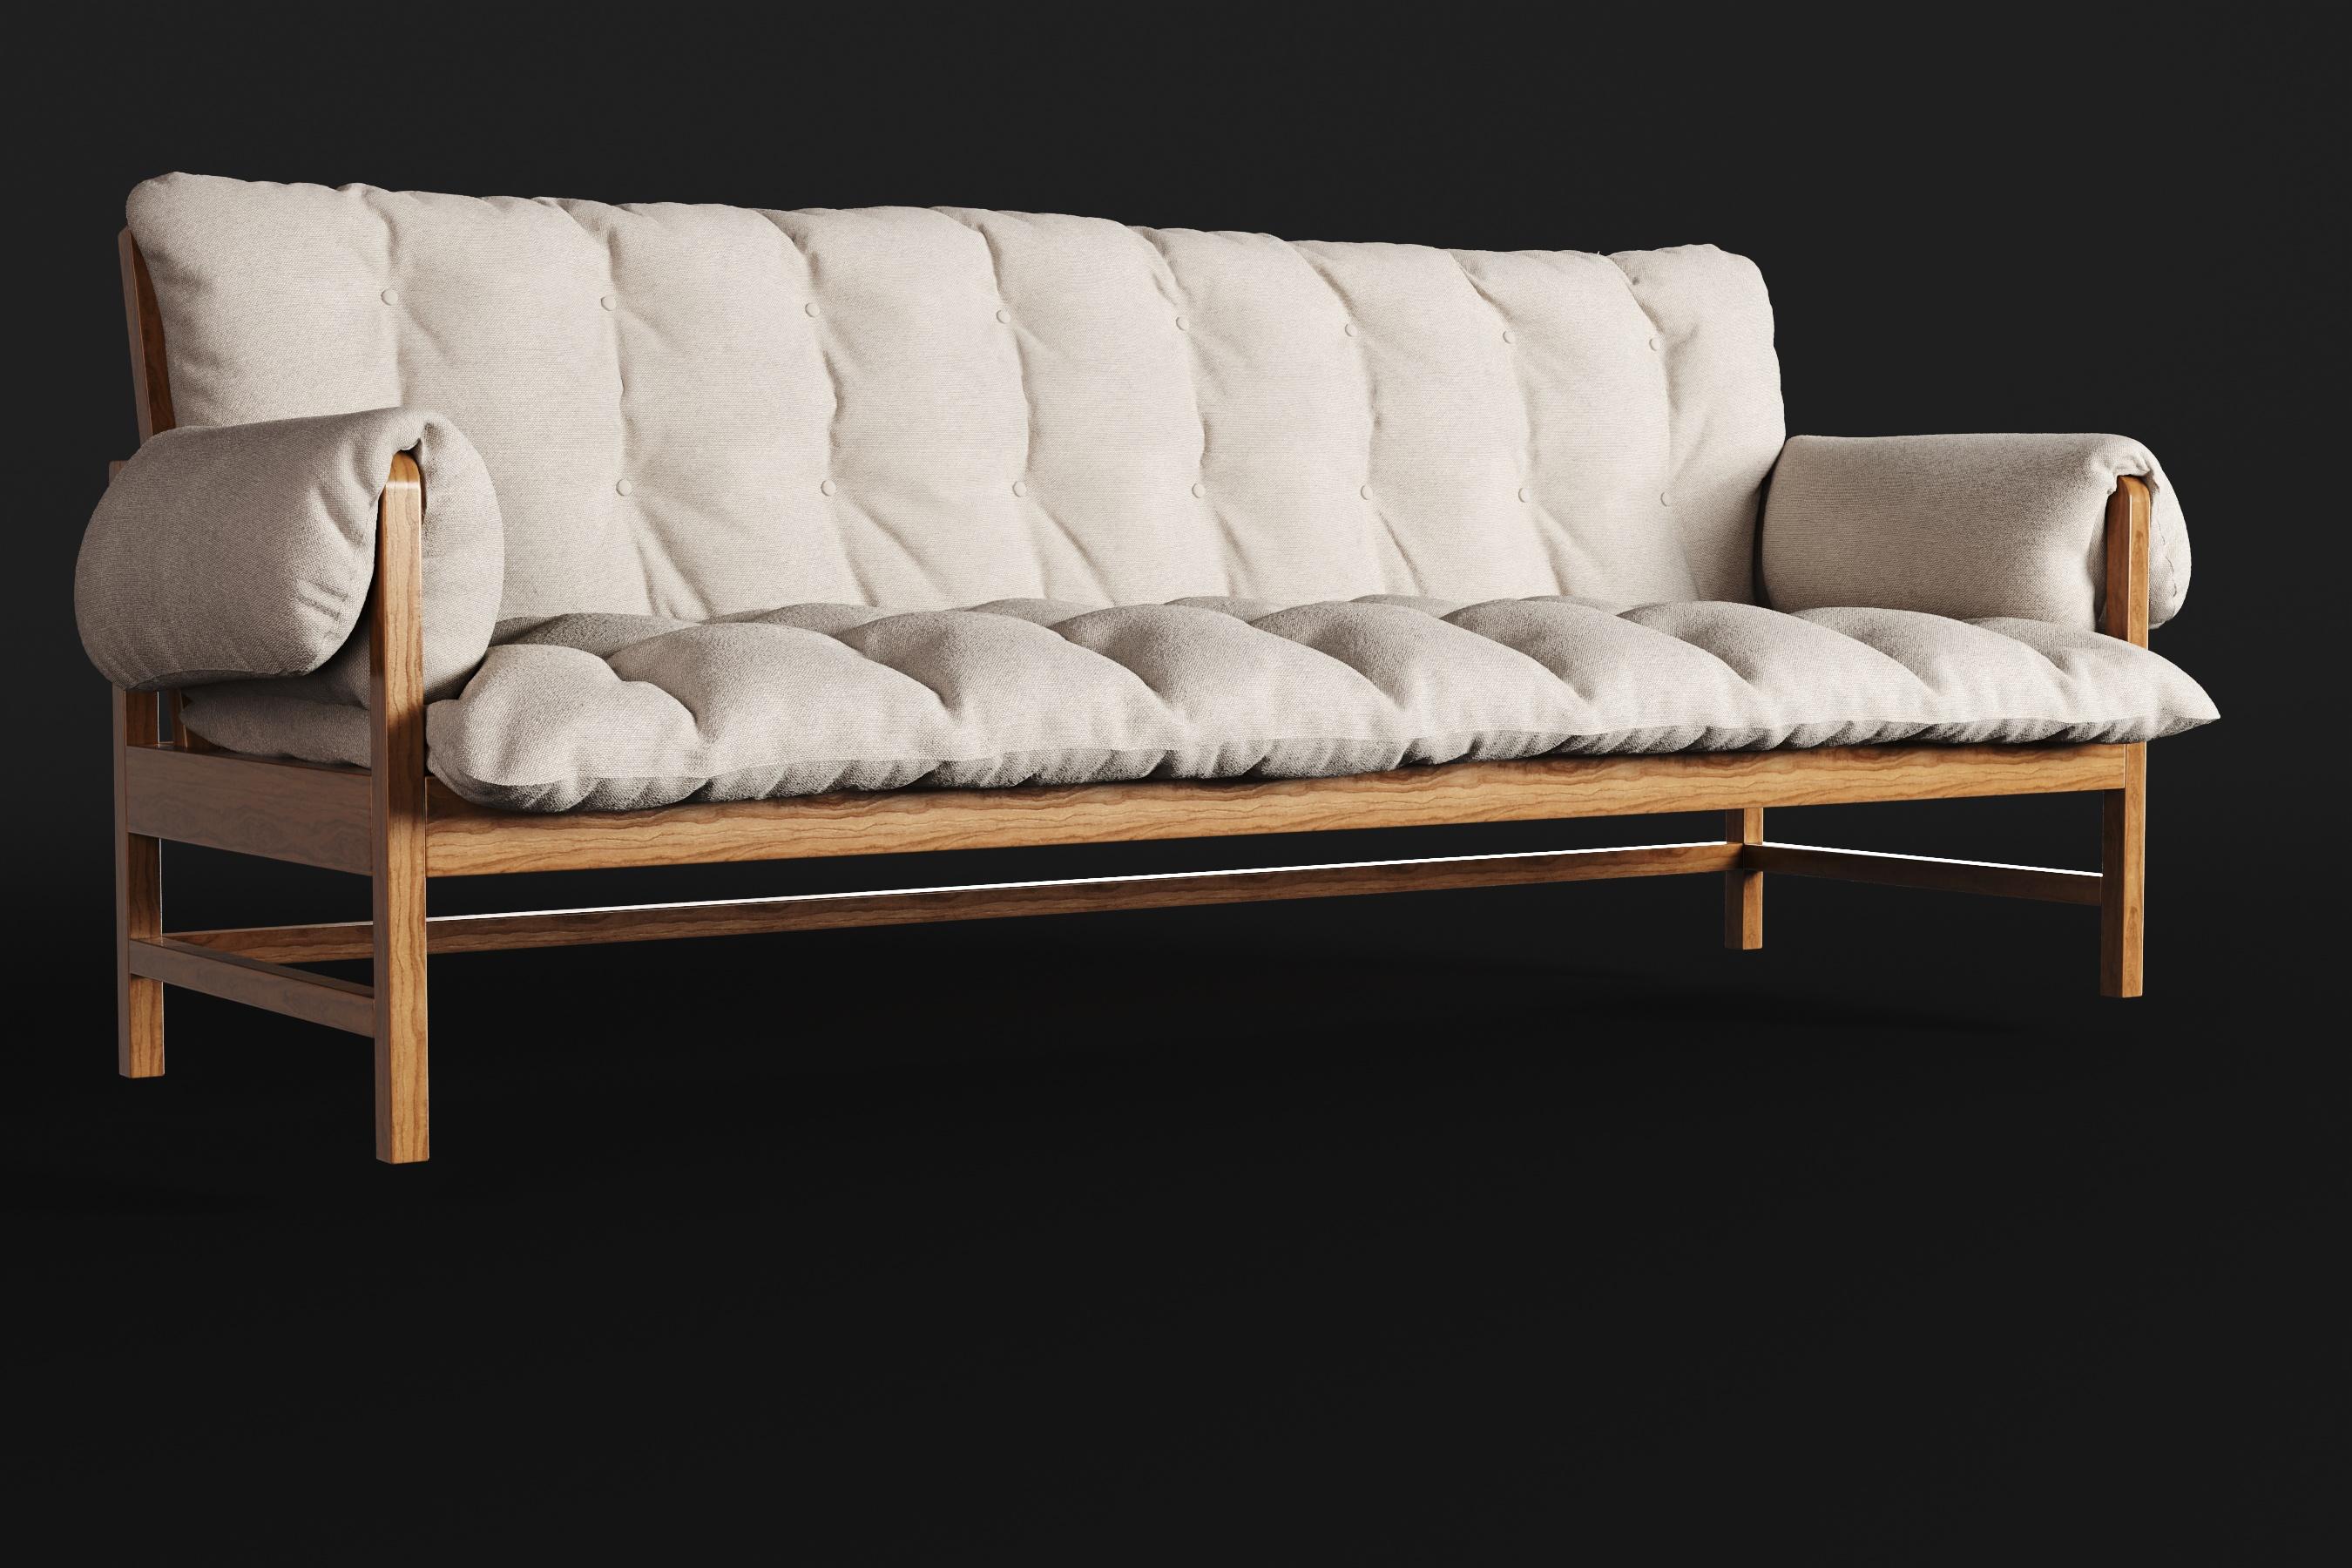 Das Sofa Lazy zeichnet sich durch schlanke, sanfte und fließende Linien aus und wurde sorgfältig entworfen, um sowohl Komfort als auch Eleganz auszustrahlen. Die Polsterung besteht aus einer Füllung aus silikonisierten Fasern in Kombination mit